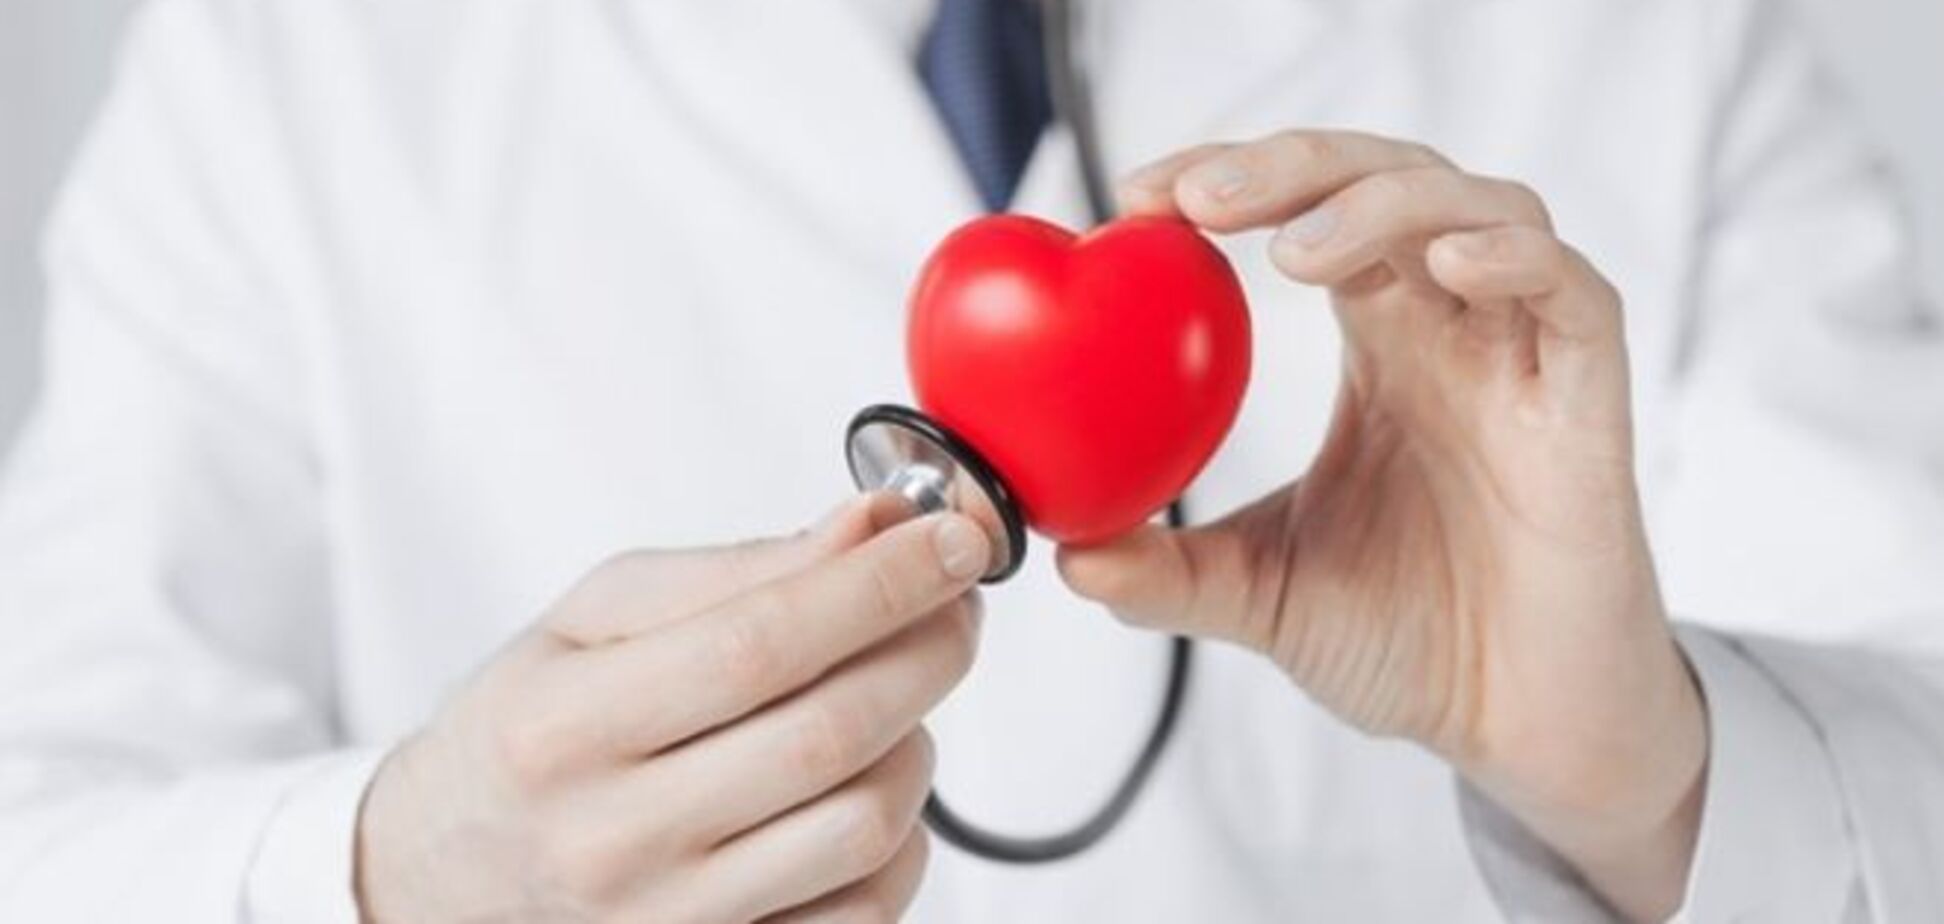 Врачи назвали 5 неожиданных признаков проблем с сердцем